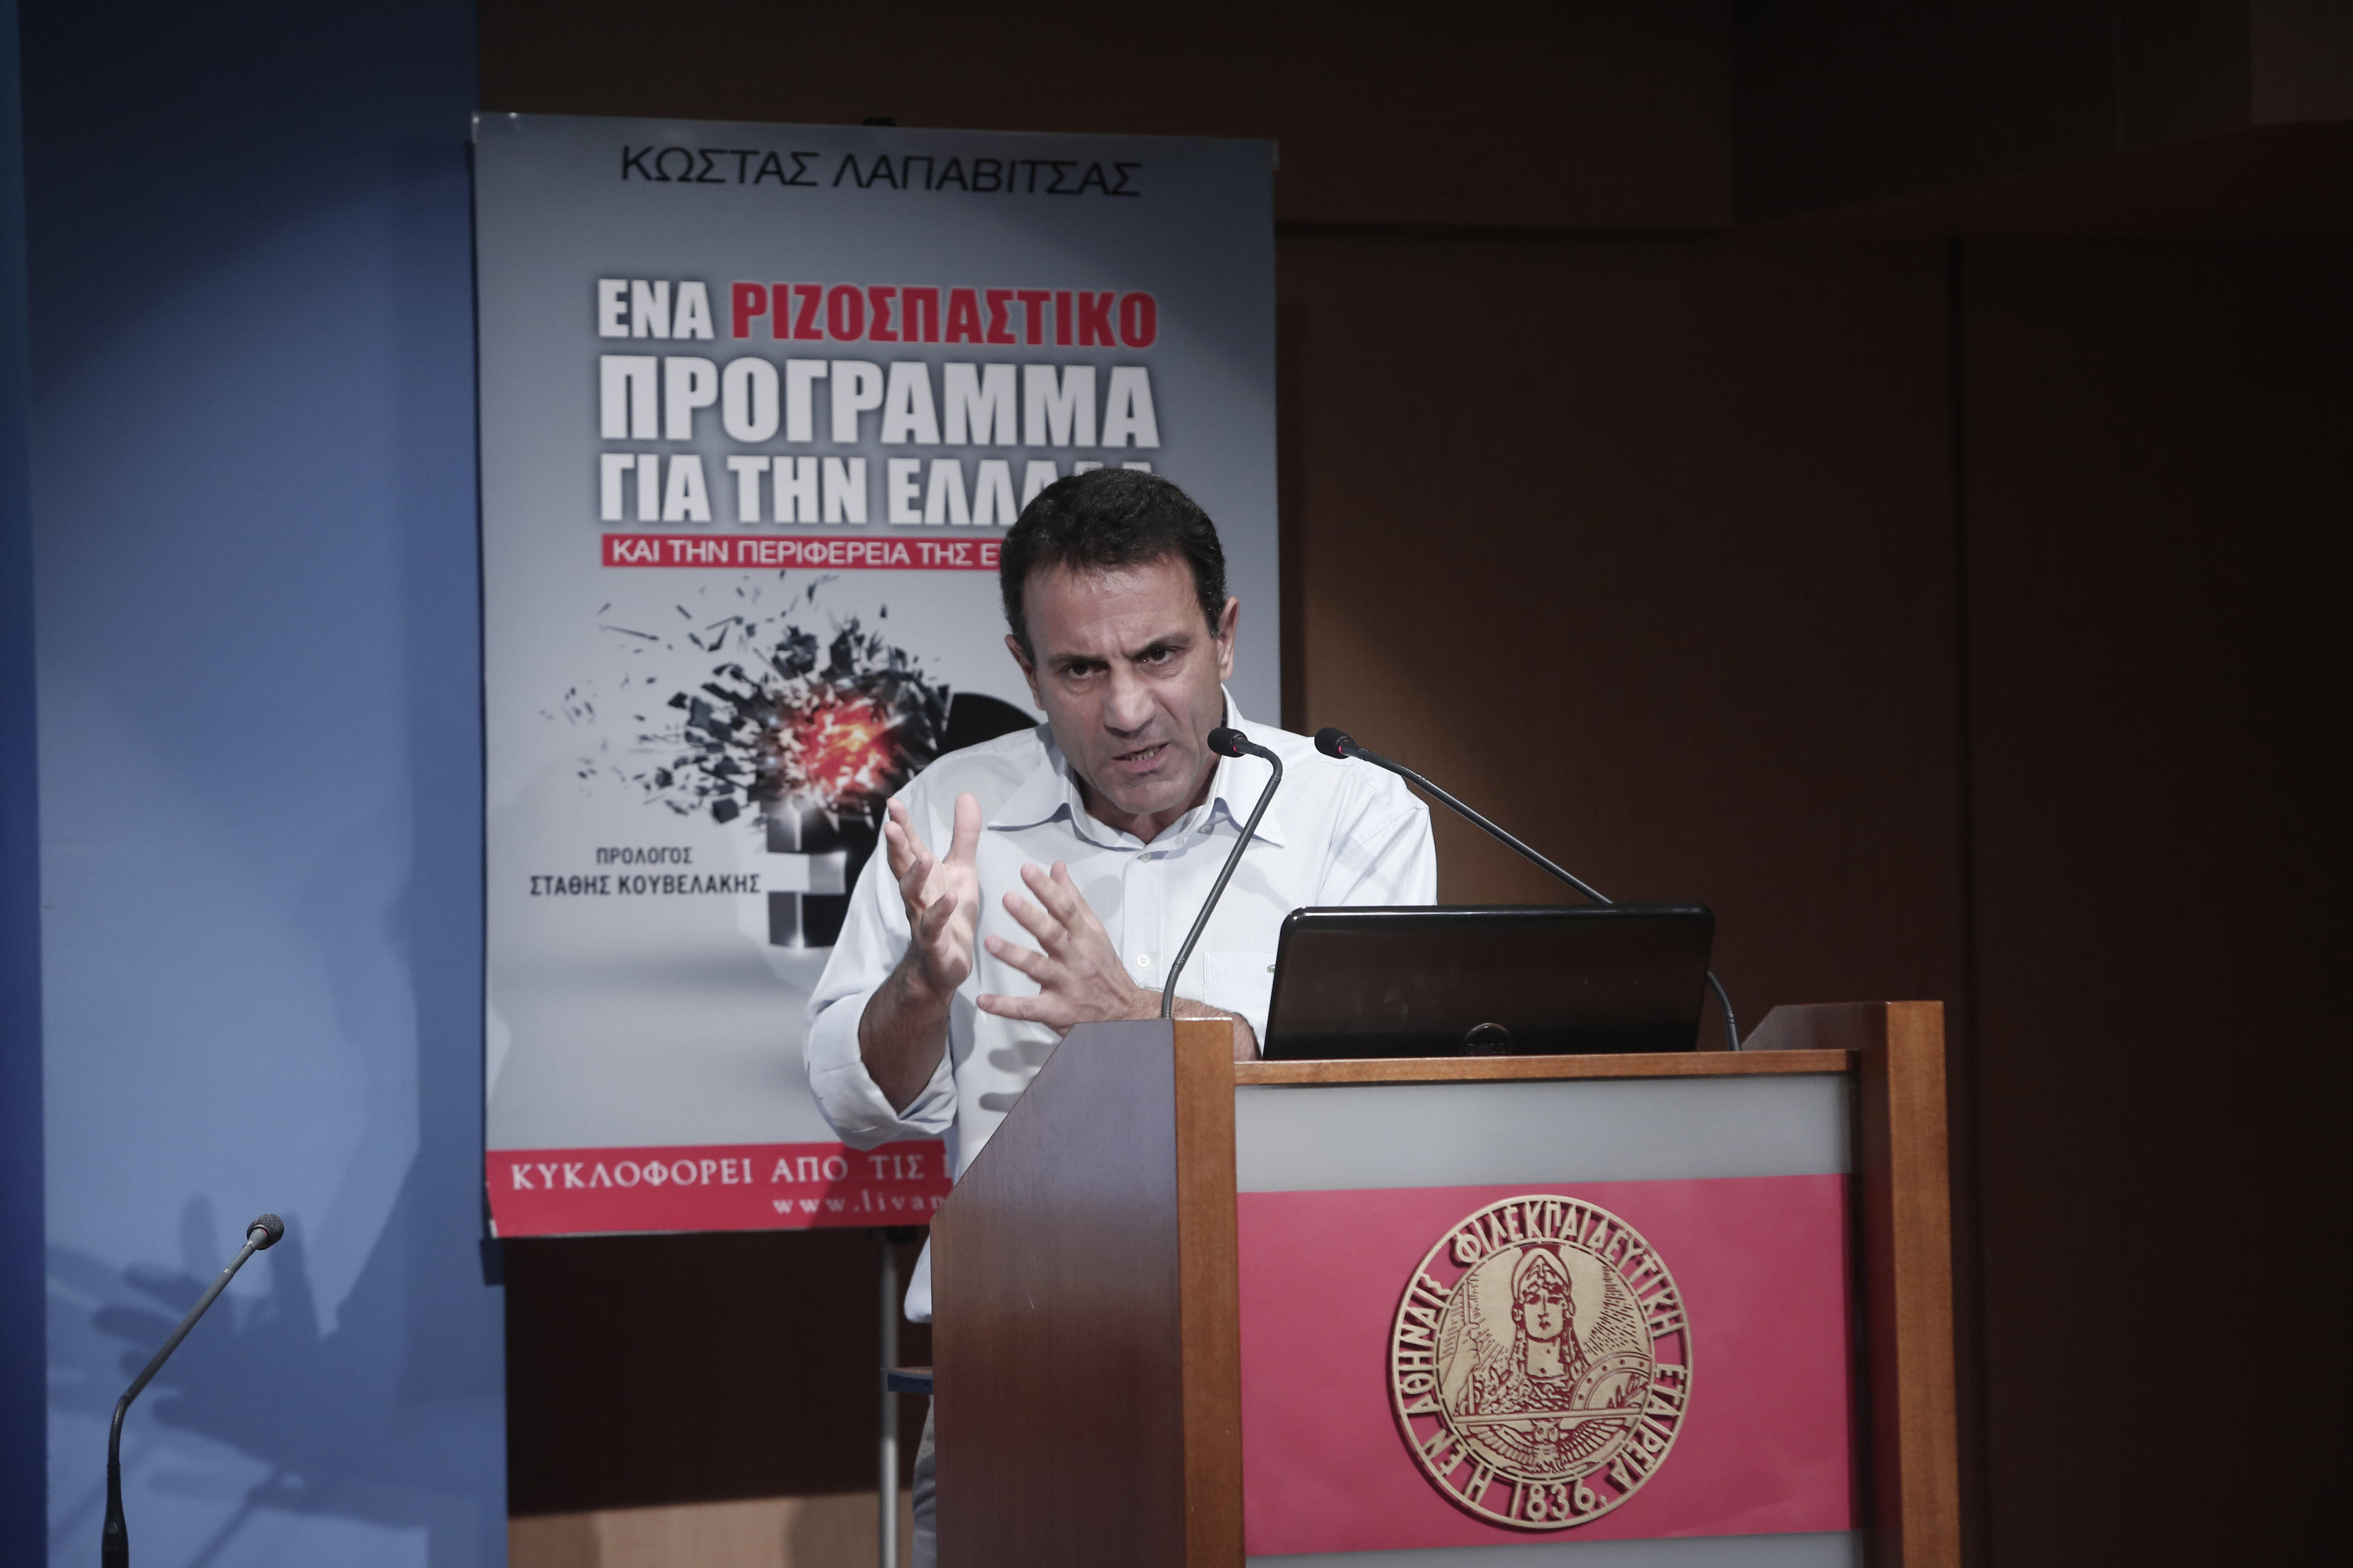 Κ. Λαπαβίτσας: Το μήνυμα των αγορών για την Ελλάδα και ο ΣΥΡΙΖΑ